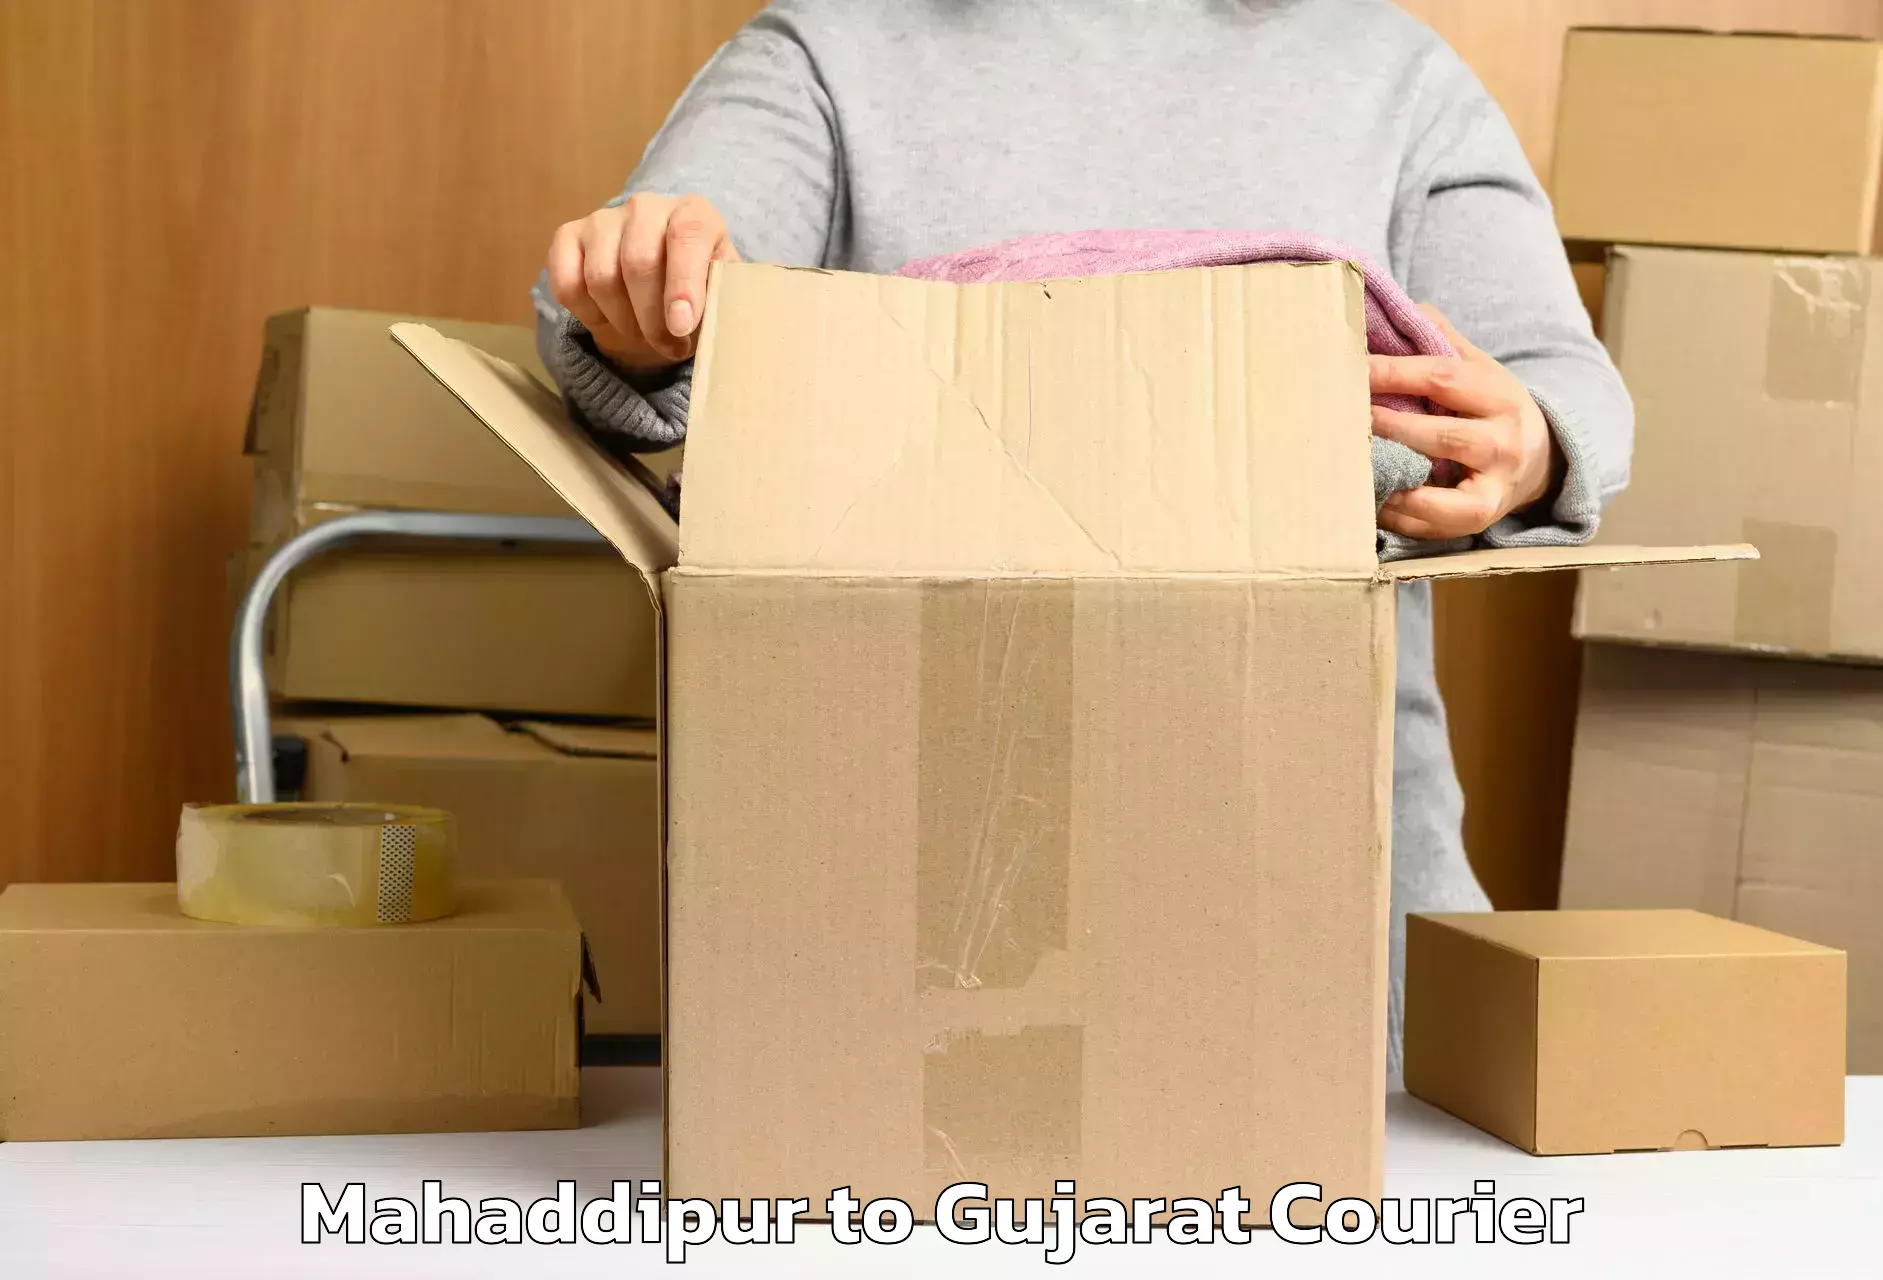 Baggage shipping rates calculator Mahaddipur to Jamnagar